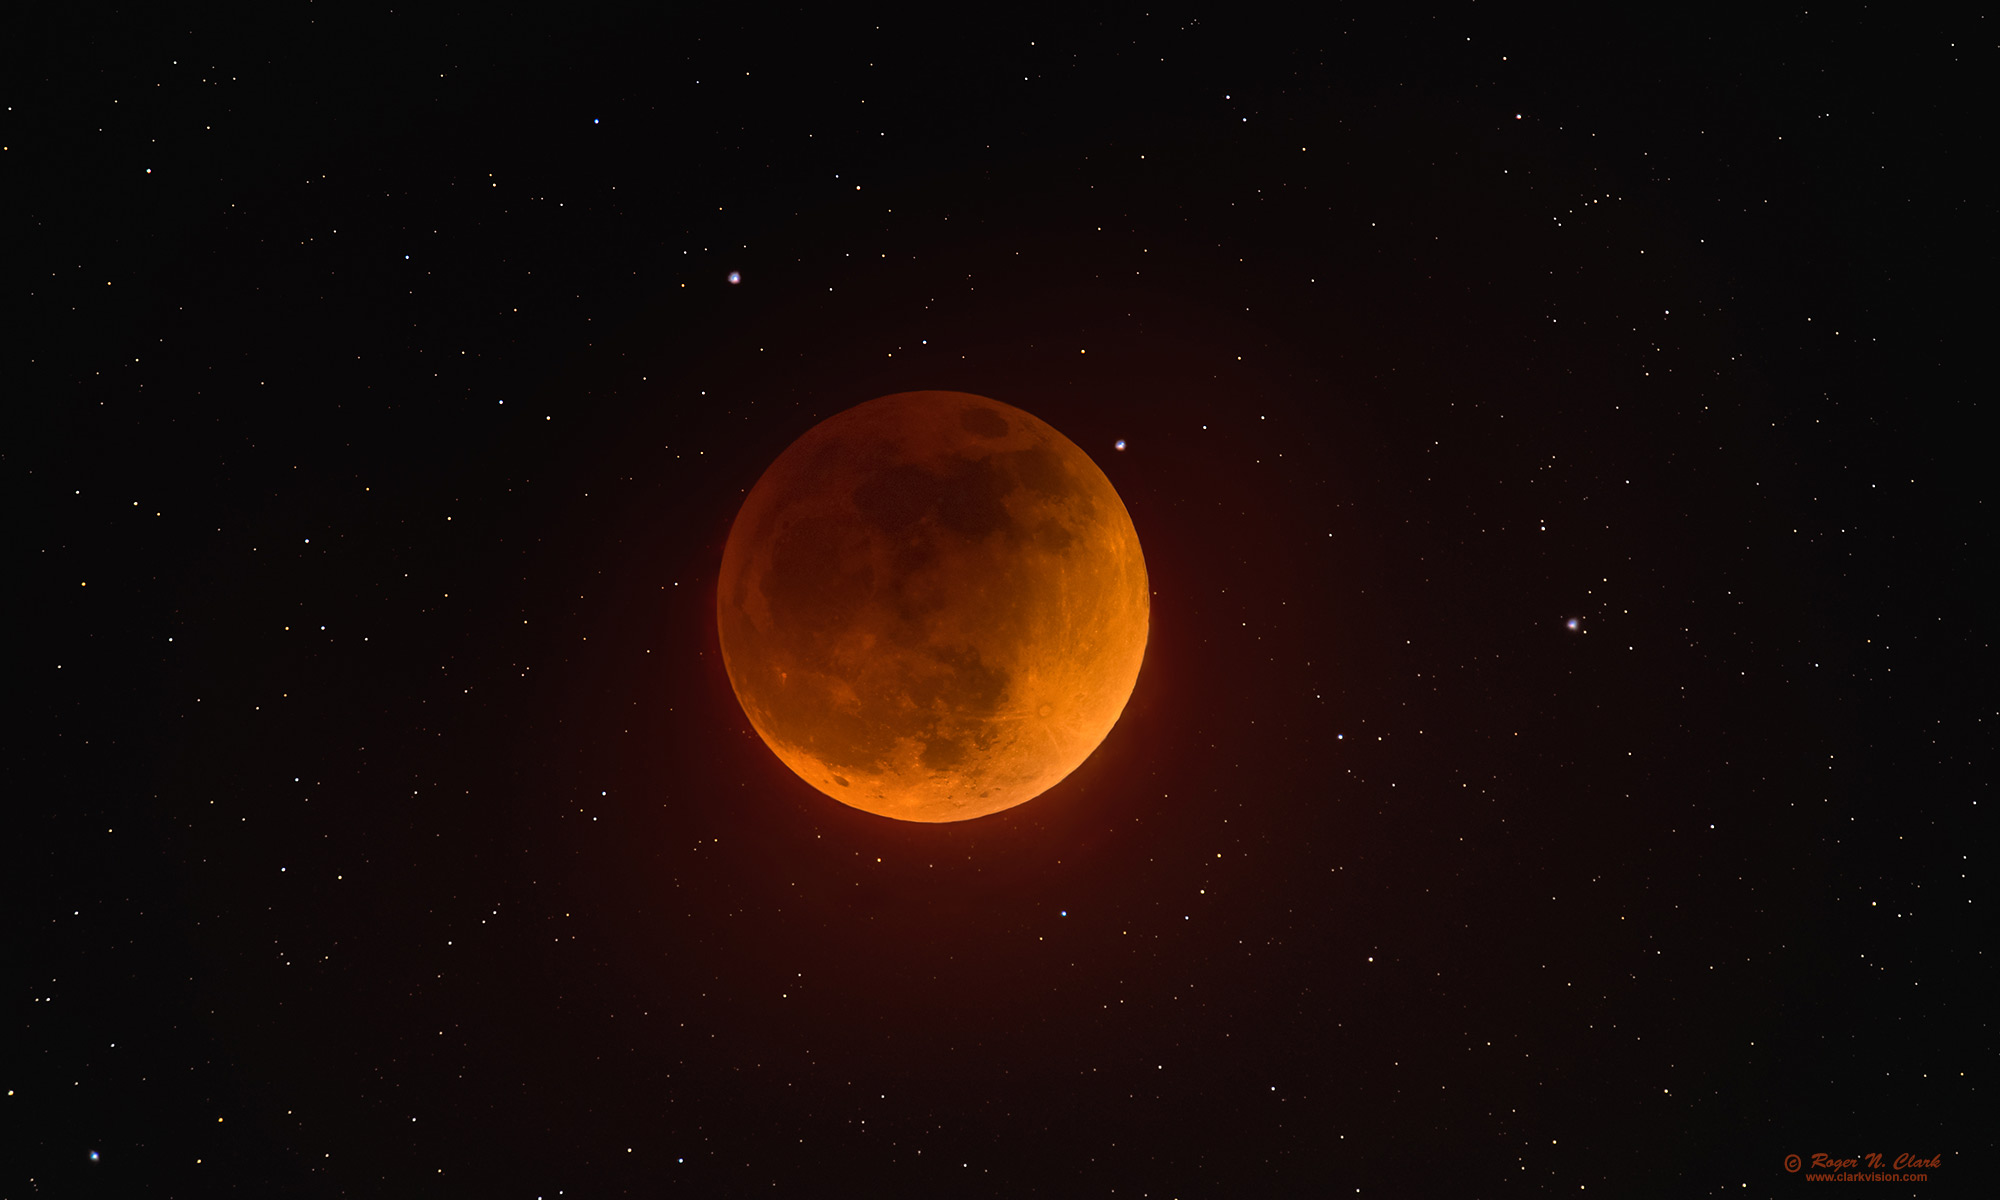 image moon-eclipse-stars-rnclark-c05-15-2022_av93.i-c1s.jpg is Copyrighted by Roger N. Clark, www.clarkvision.com